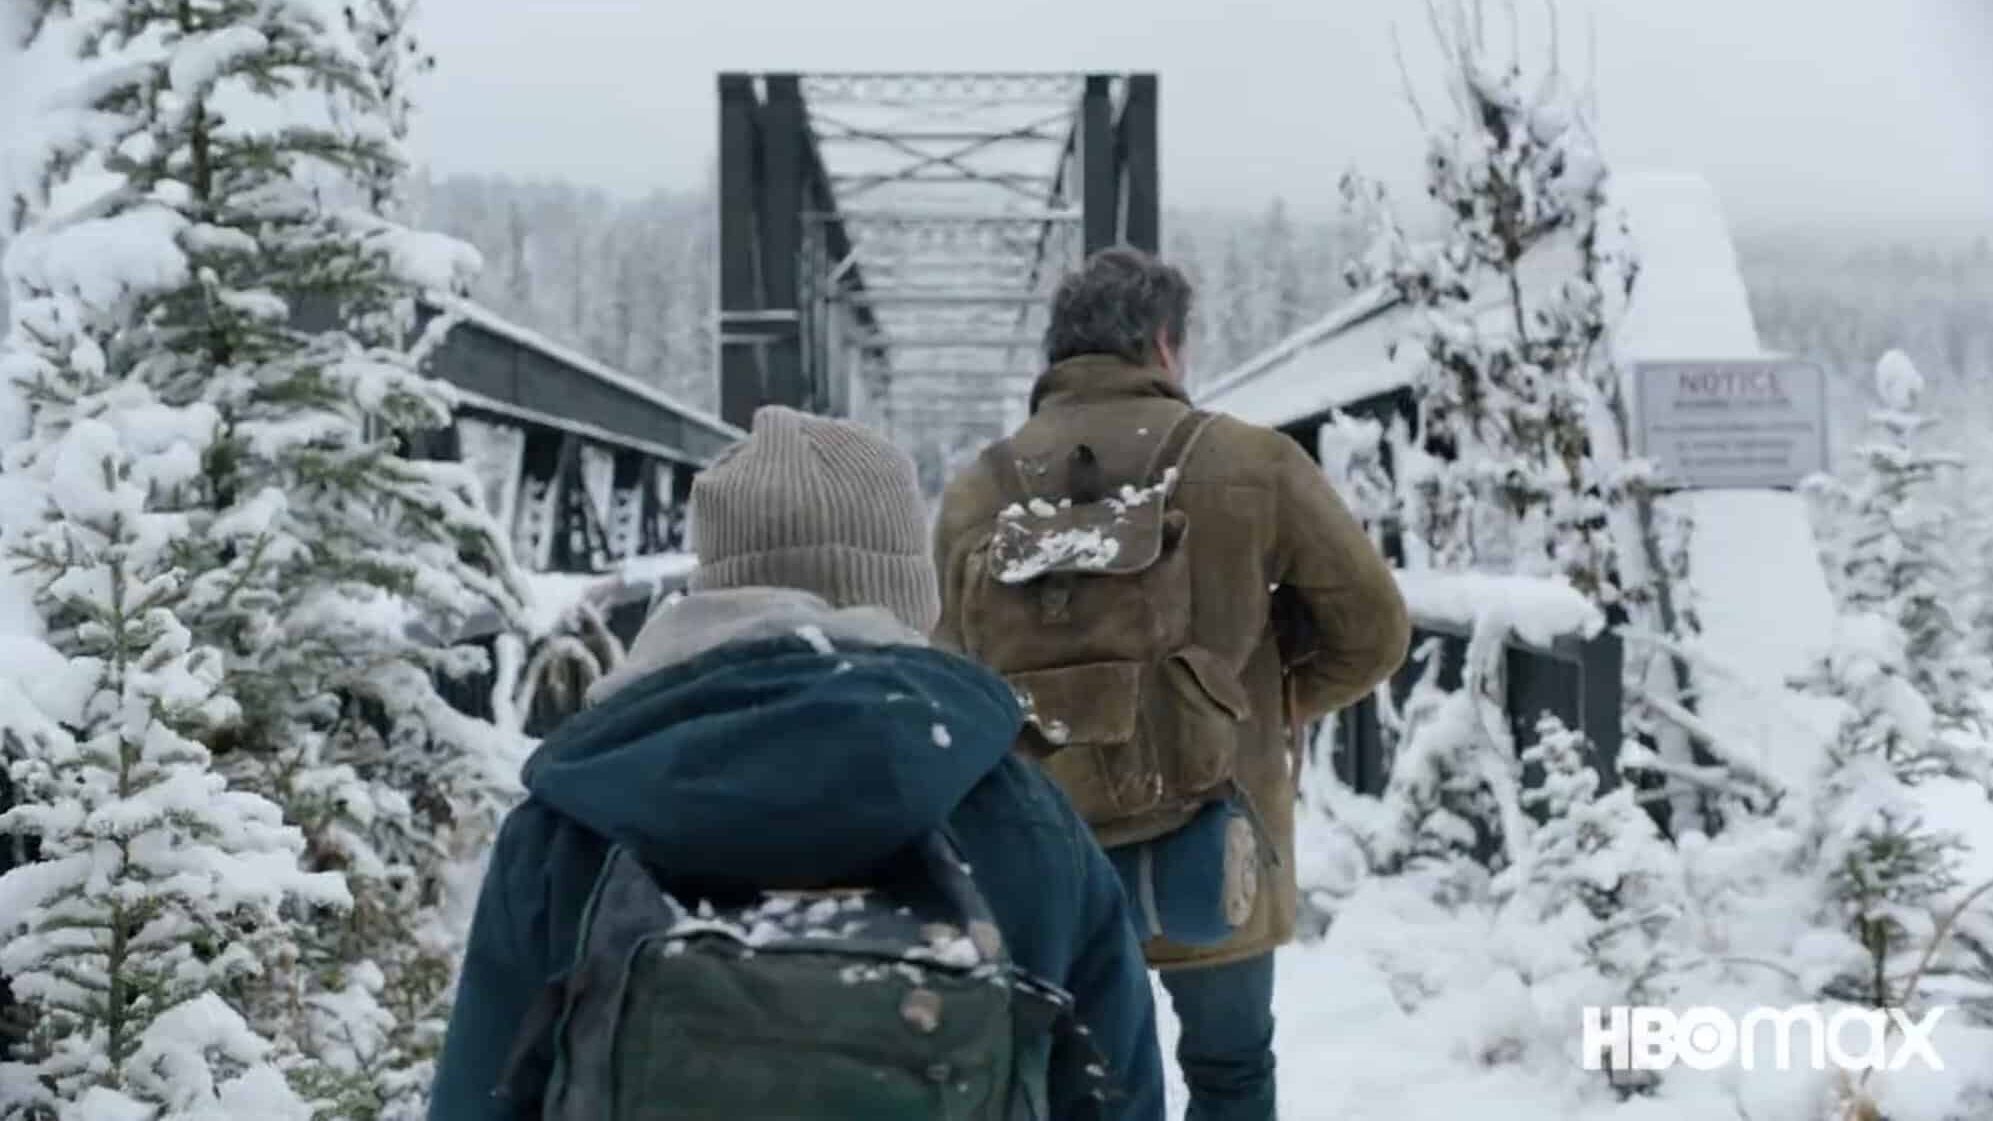 The Last of Us: que horas estreia a série no HBO Max?